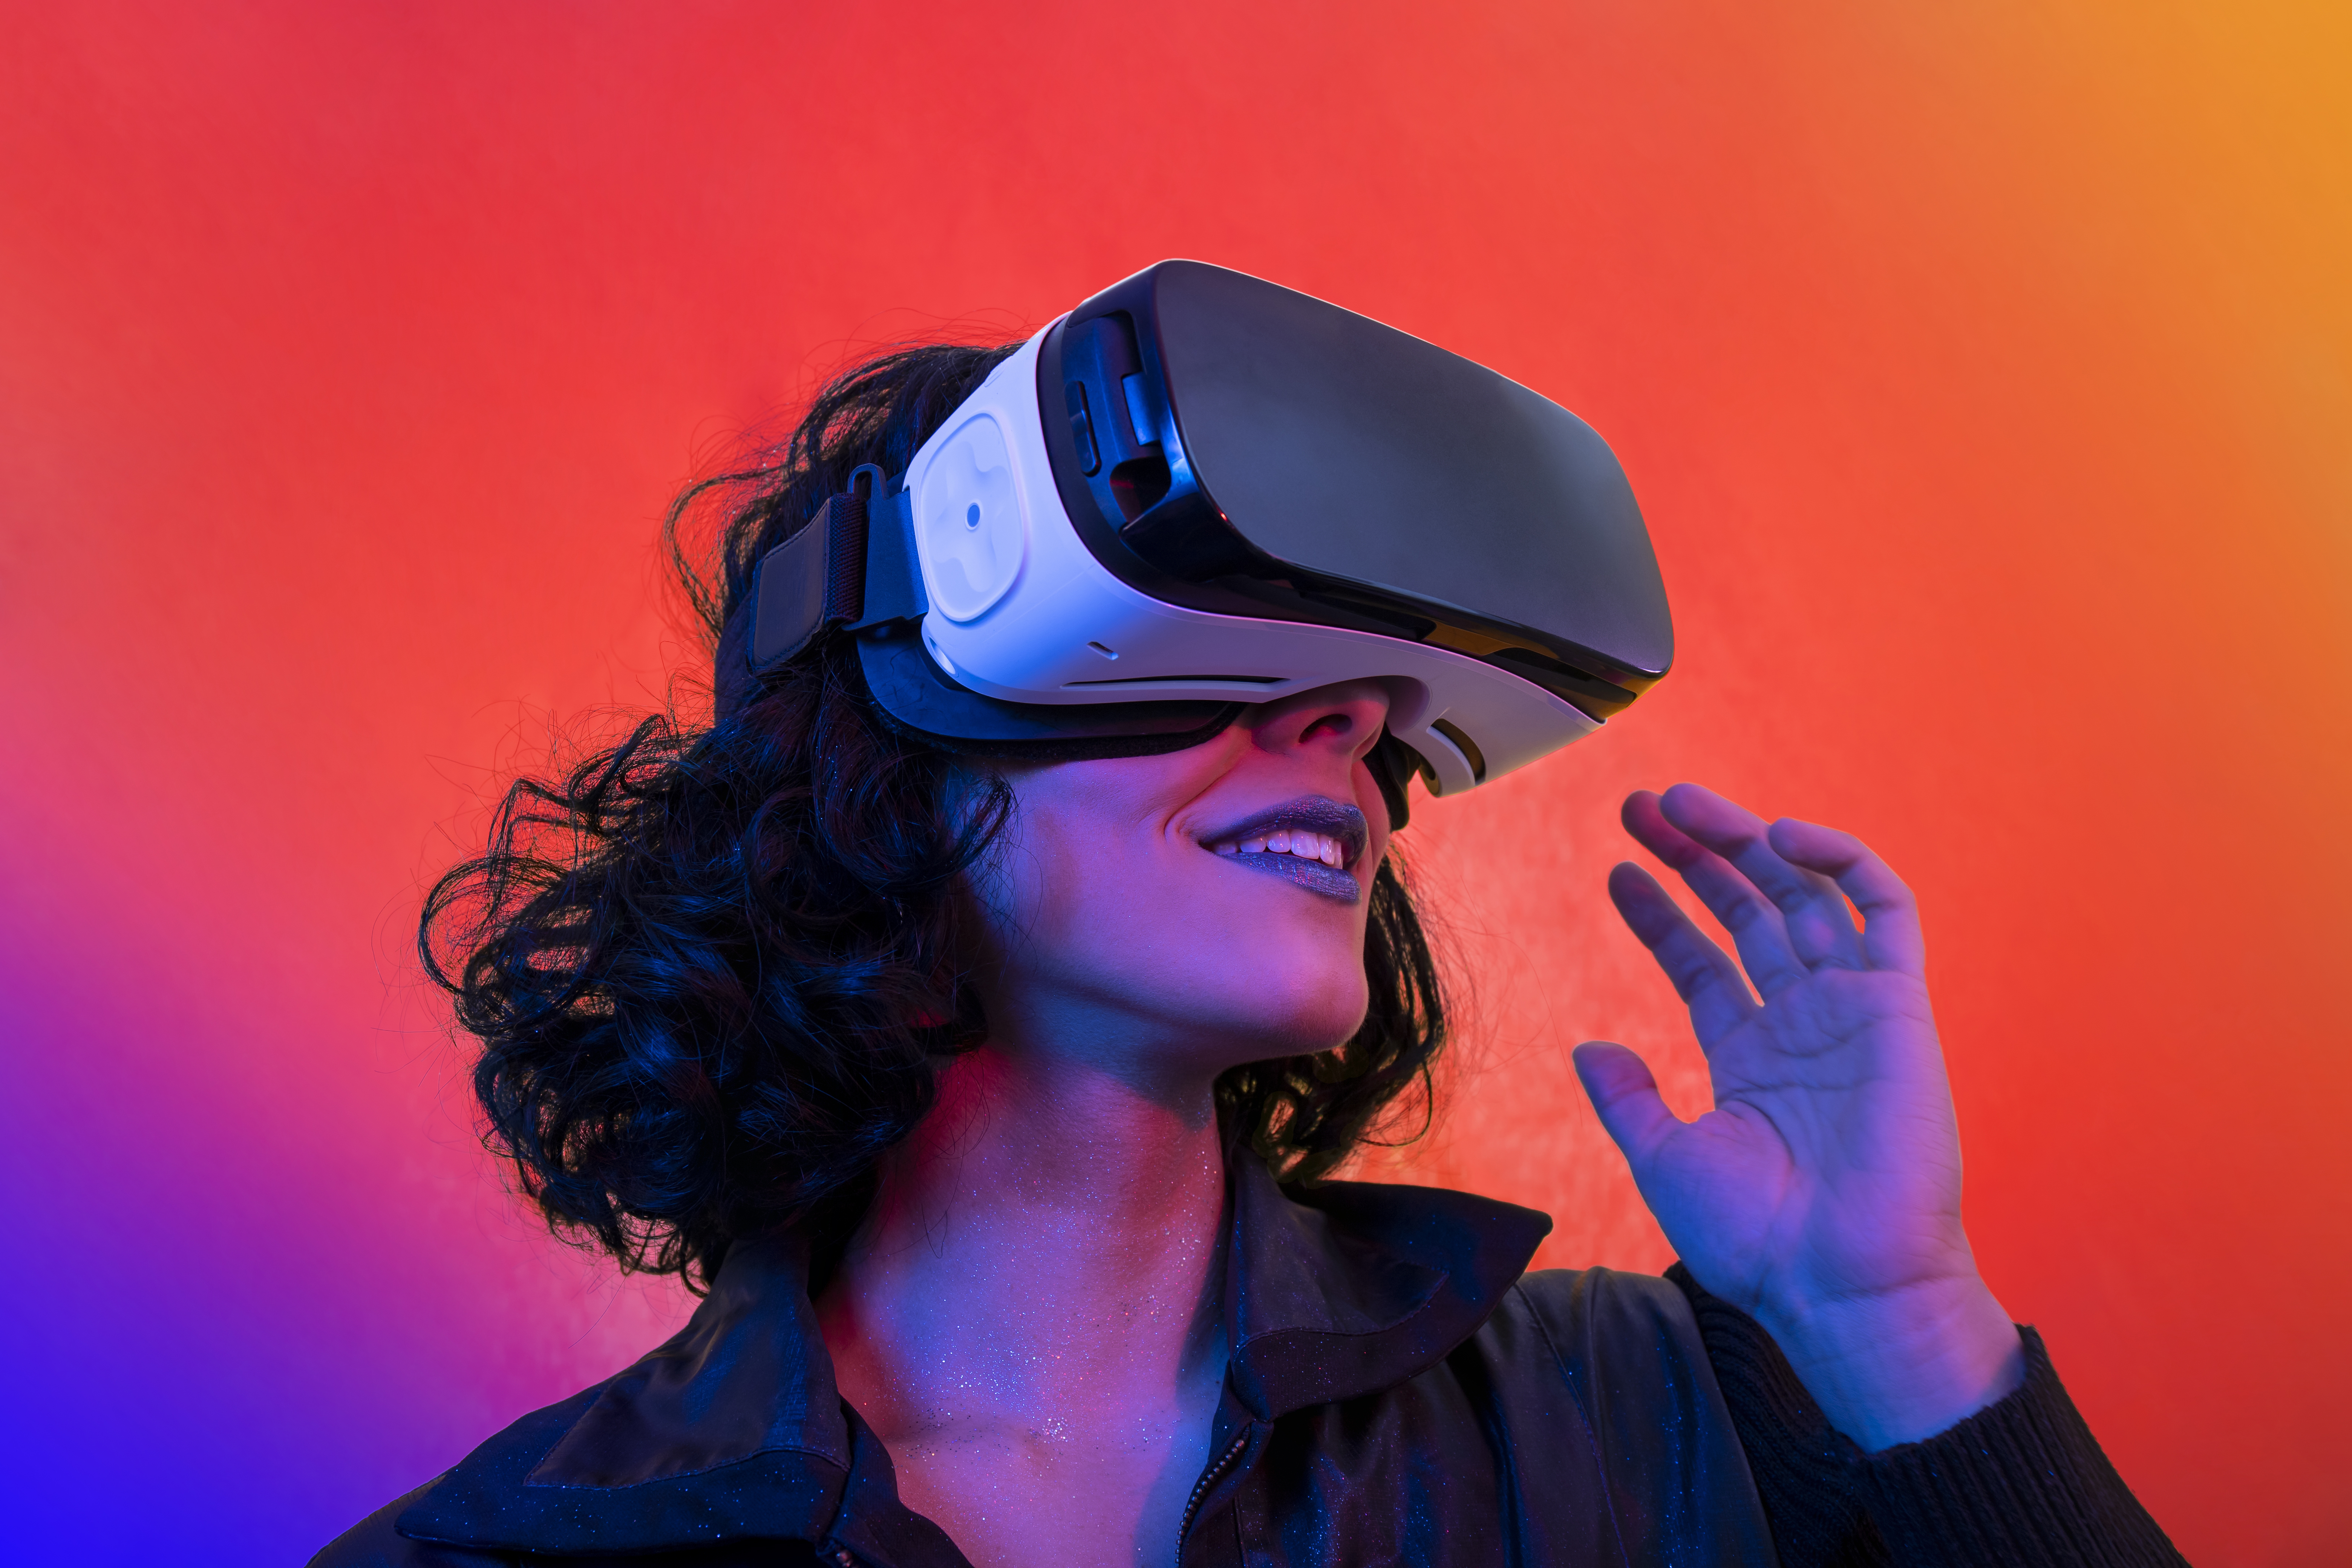 Apple veut faire de son casque VR un produit universel